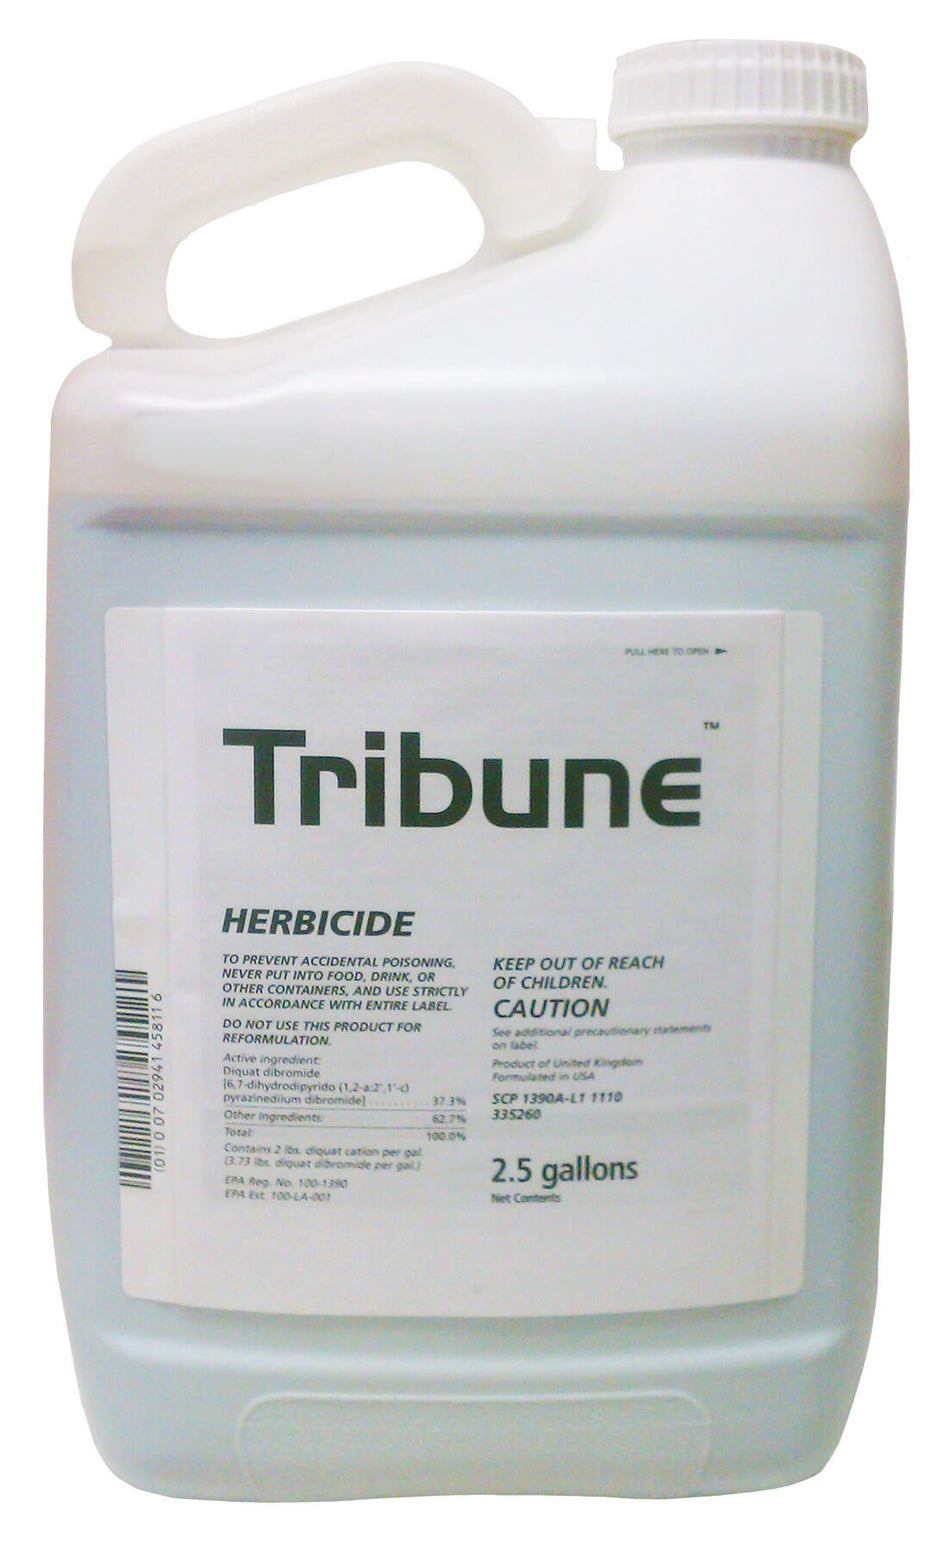 Tribune Aquatic Herbicide – 2.5 gallons